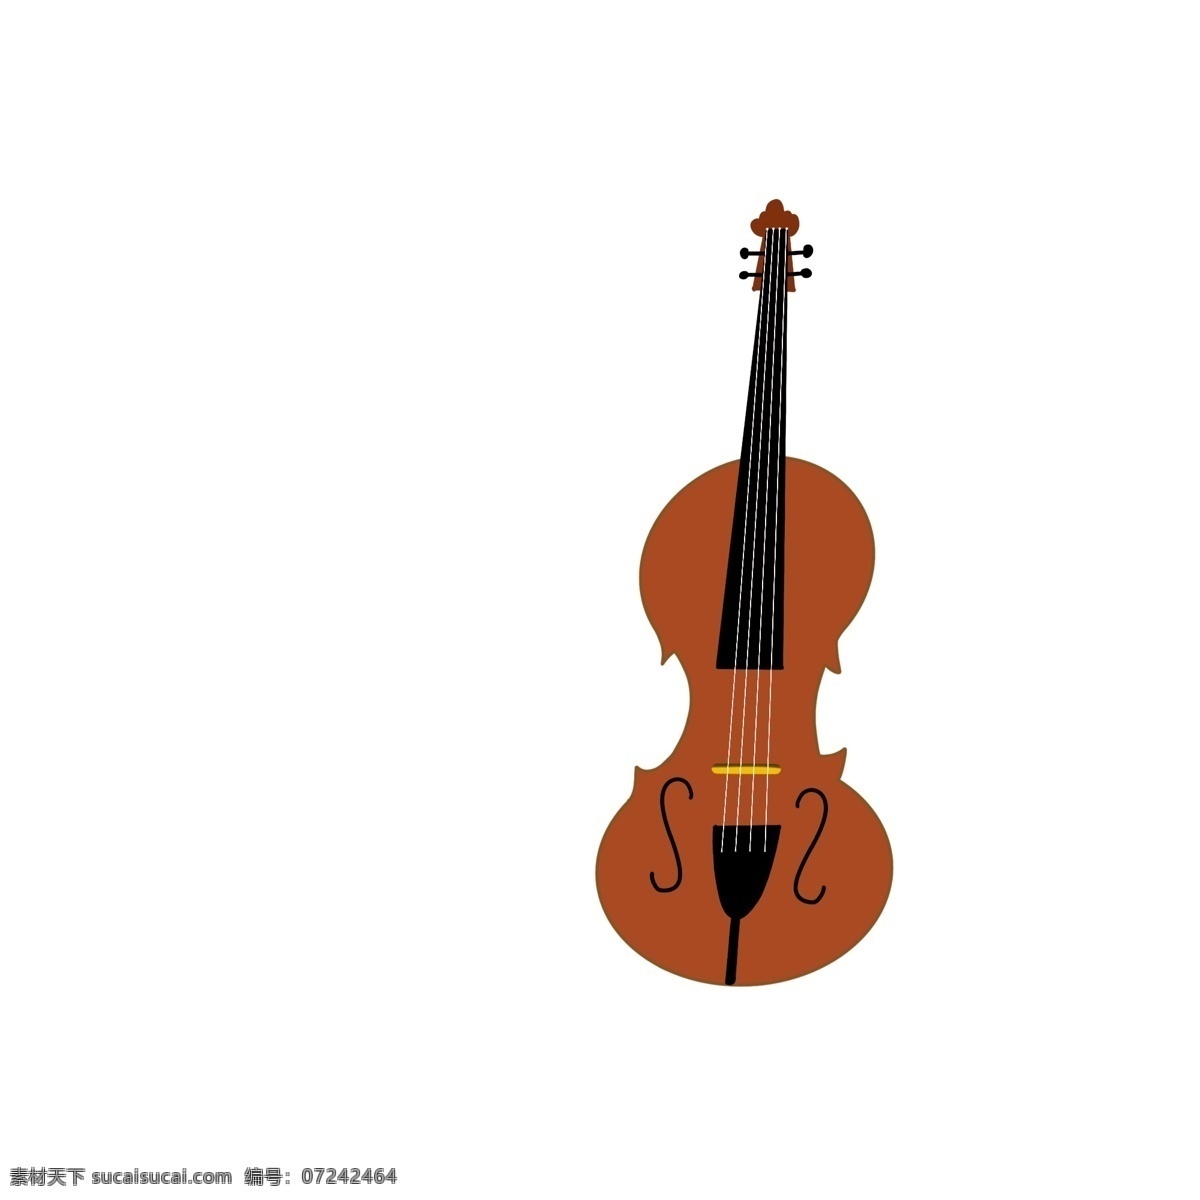 国际 爵士乐 日 各种 乐器 元素 小提琴 棕色